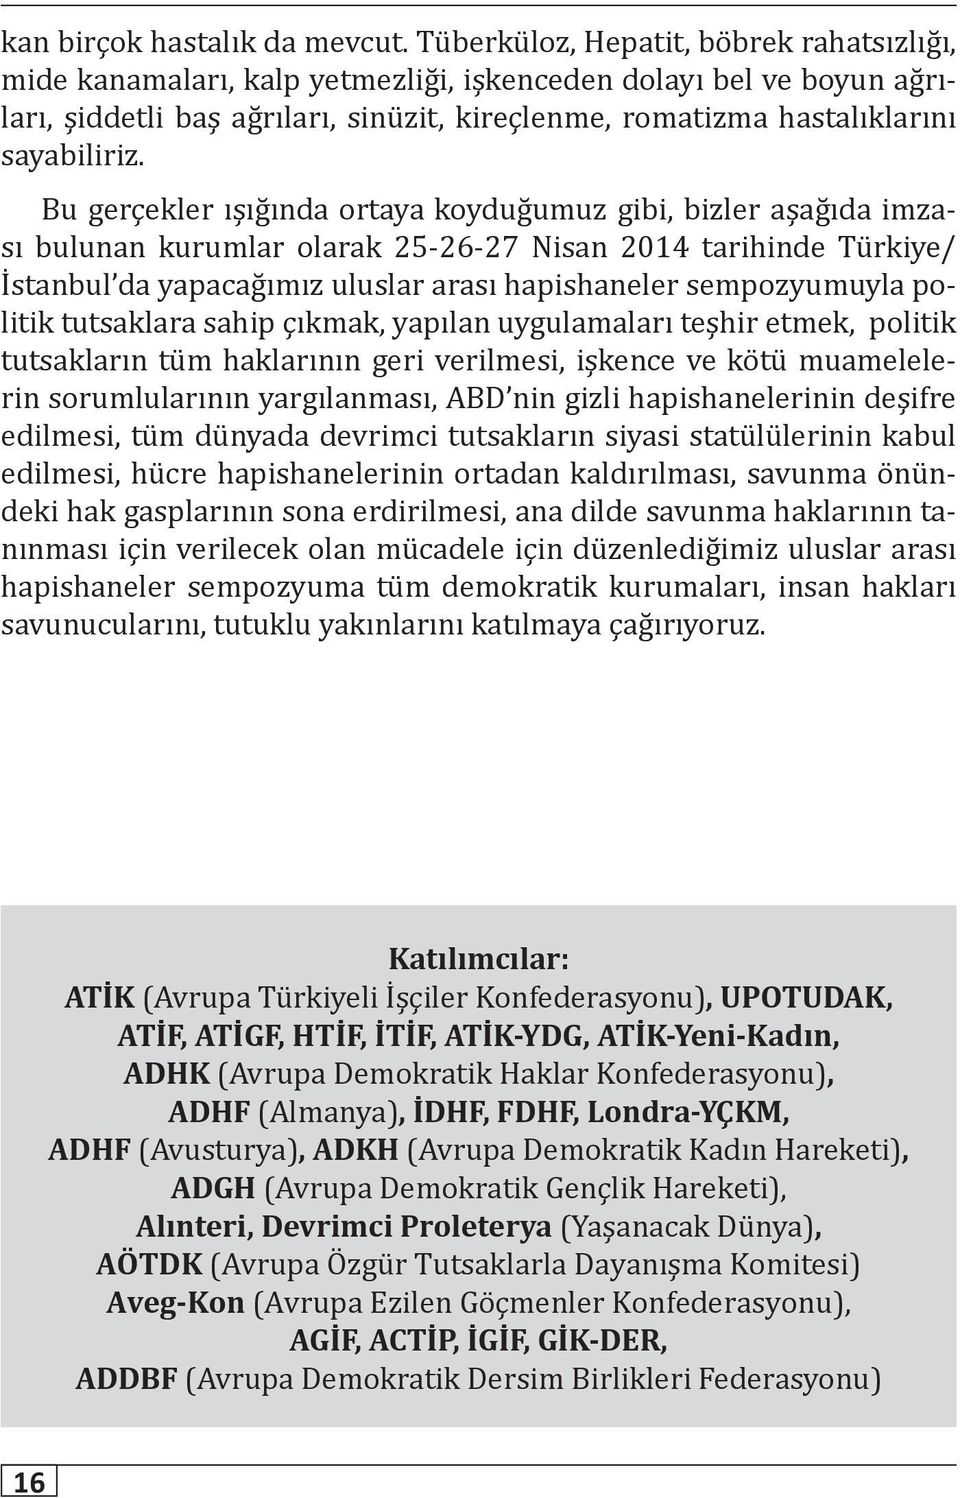 Bu gerçekler ışığında ortaya koyduğumuz gibi, bizler aşağıda imzası bulunan kurumlar olarak 25-26-27 Nisan 2014 tarihinde Türkiye/ İstanbul da yapacağımız uluslar arası hapishaneler sempozyumuyla